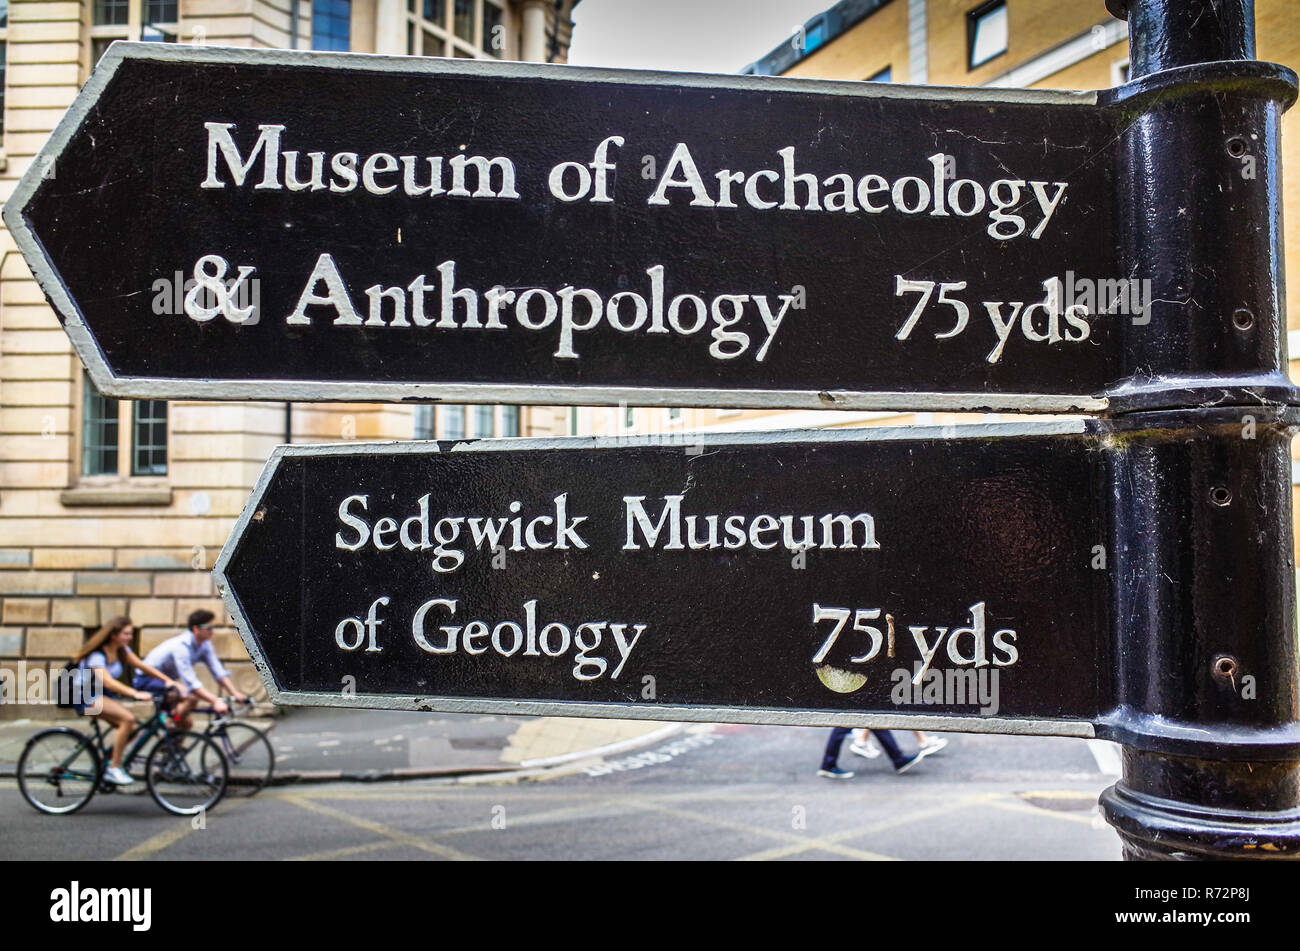 Museos de Cambridge - signos del Museo de Arqueología y Antropología y el Sedgwick Museo de Geología en el centro de Cambridge, Reino Unido Foto de stock